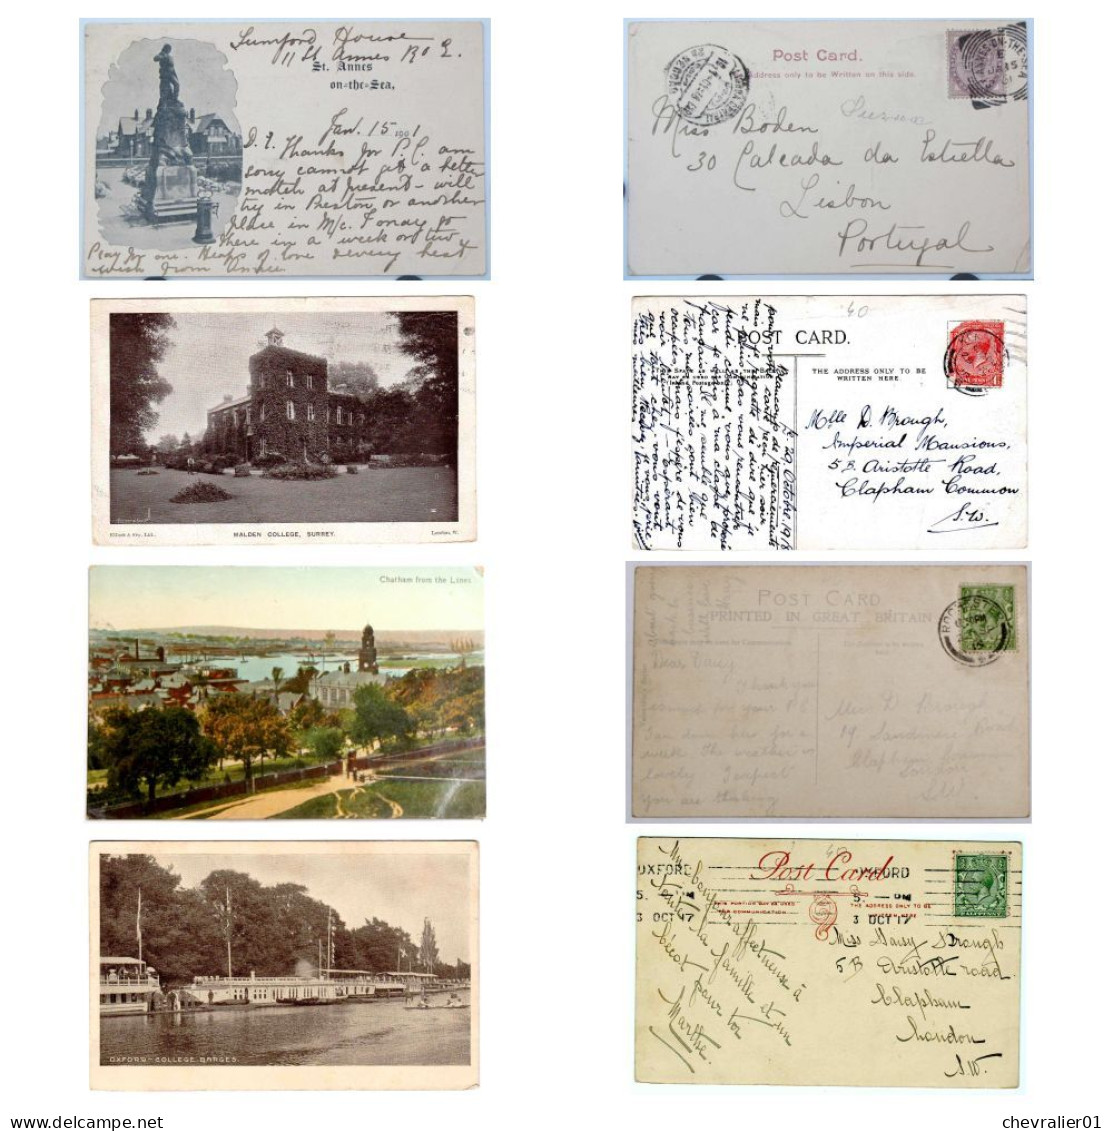 CPA-UK_lot de 44 cartes postales de villes diverses